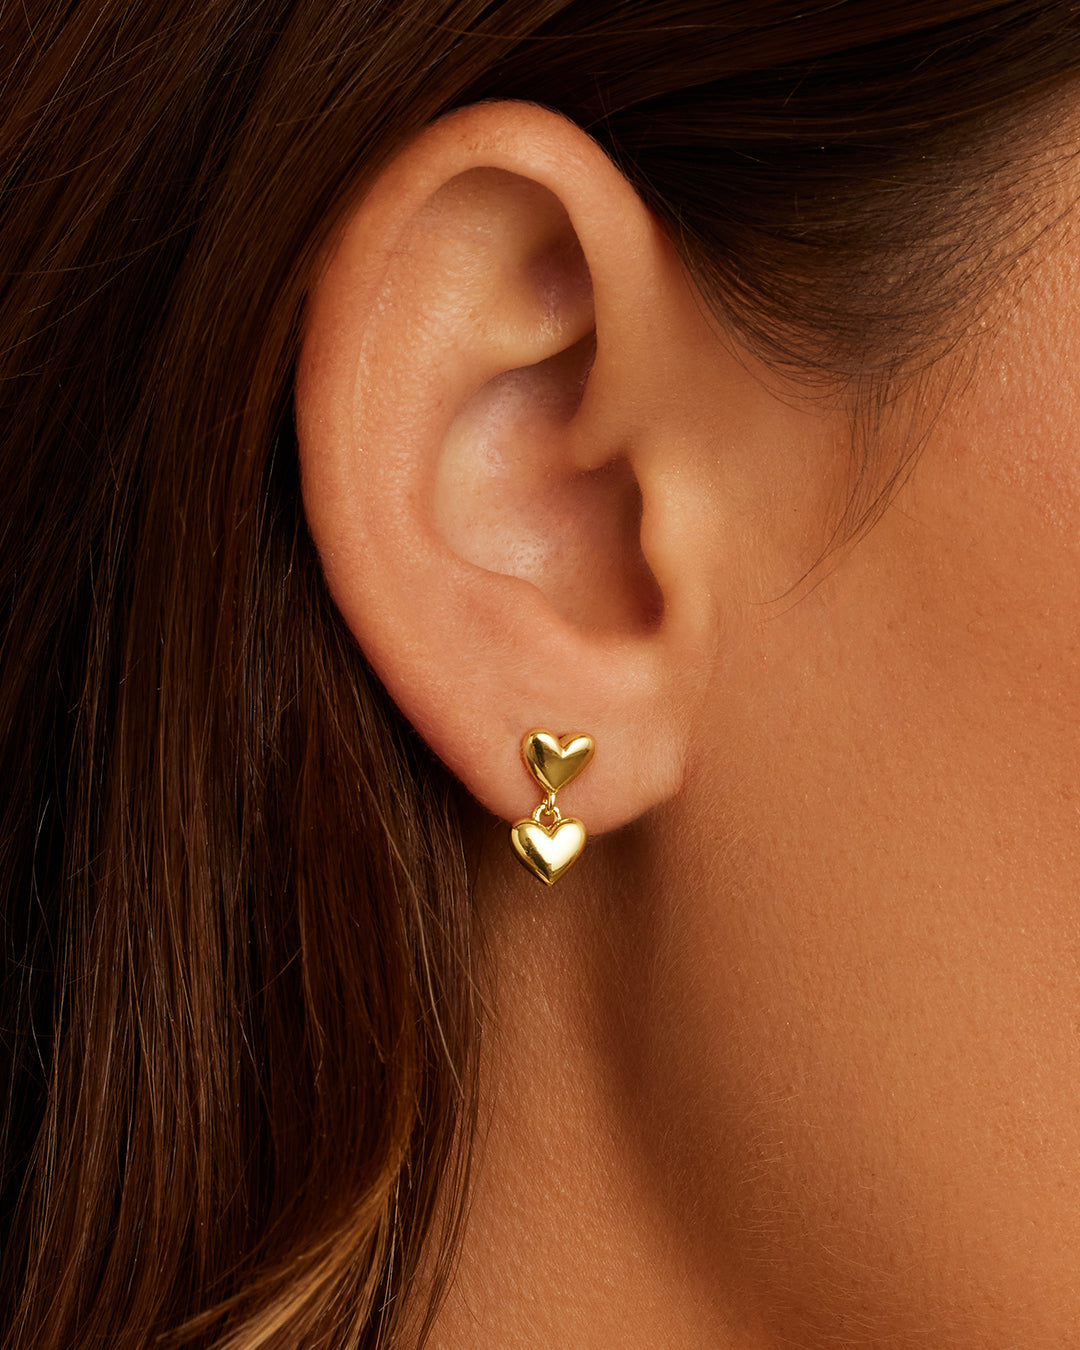 Multiple ear piercings | Upper ear earrings, Earings piercings, Ear jewelry